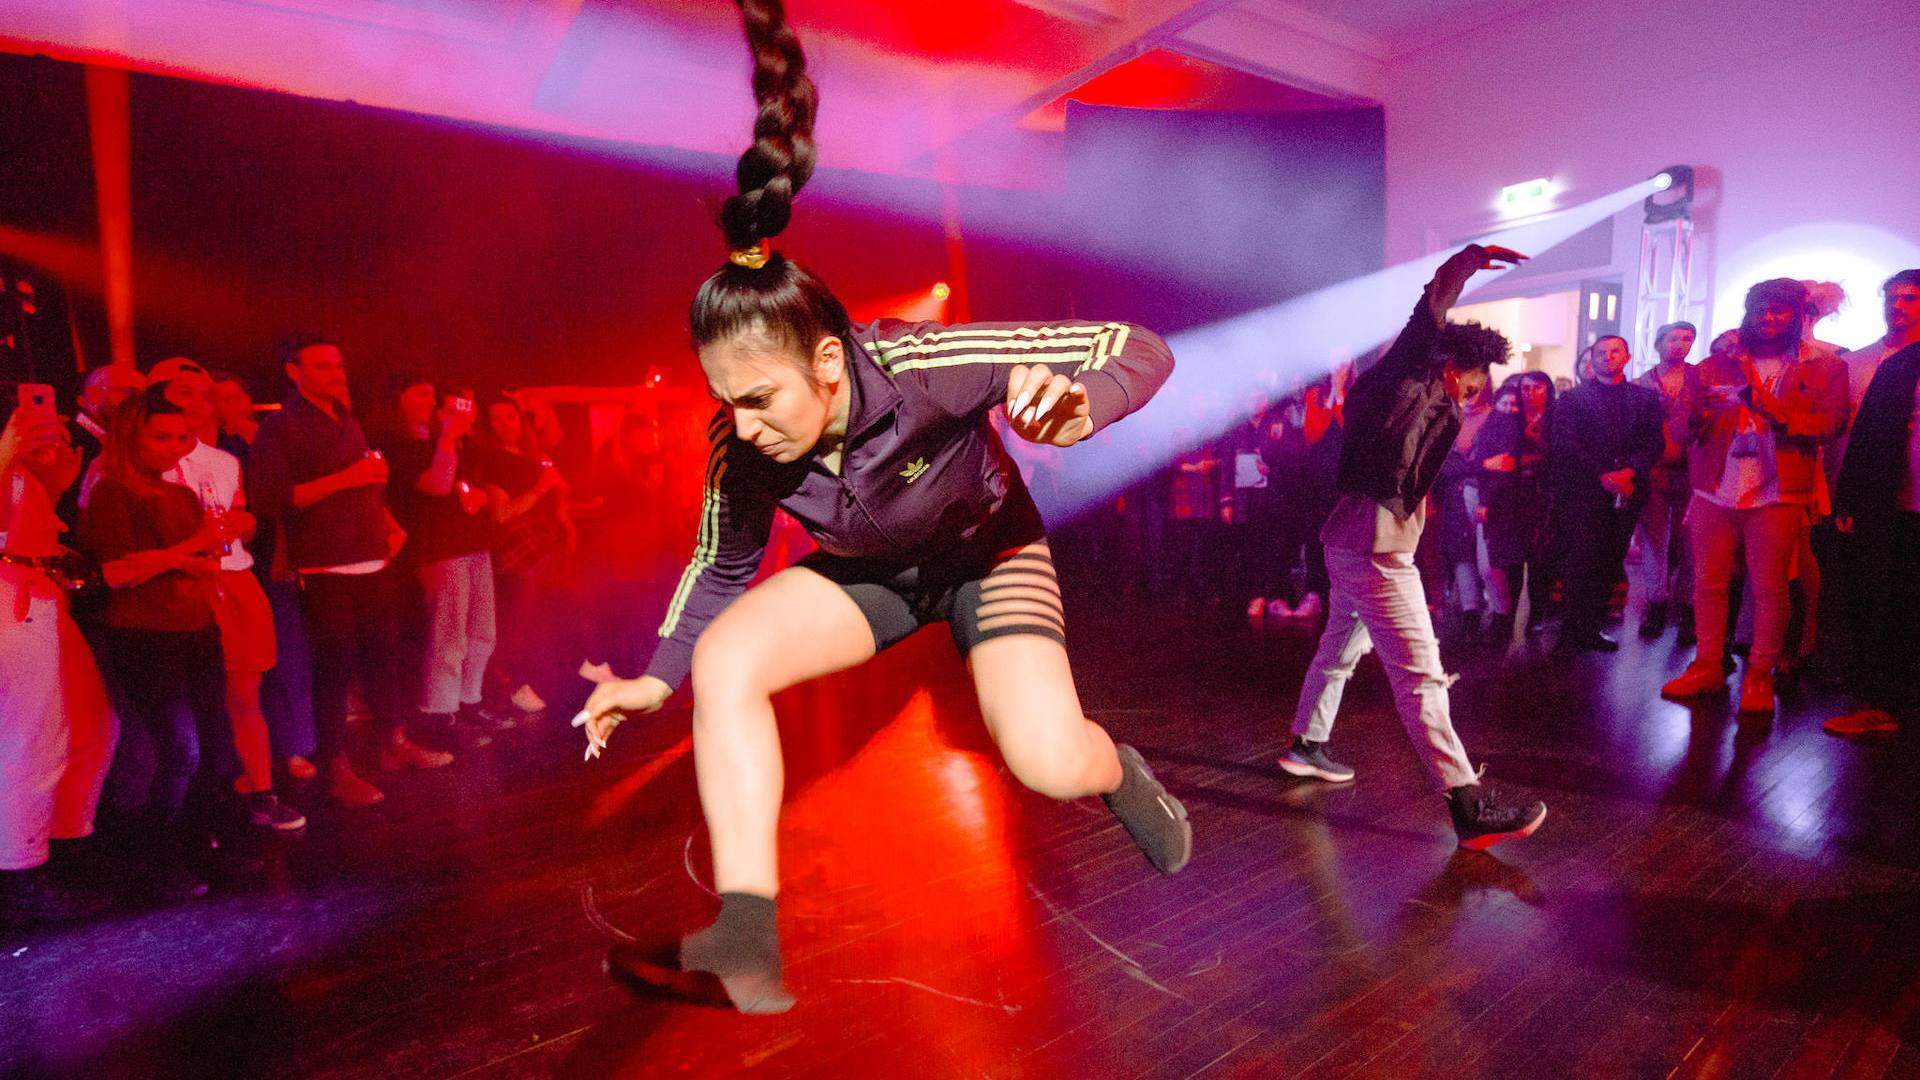 Melbourne Fringe Festival Kicks Off Its 2021 Program Next Month